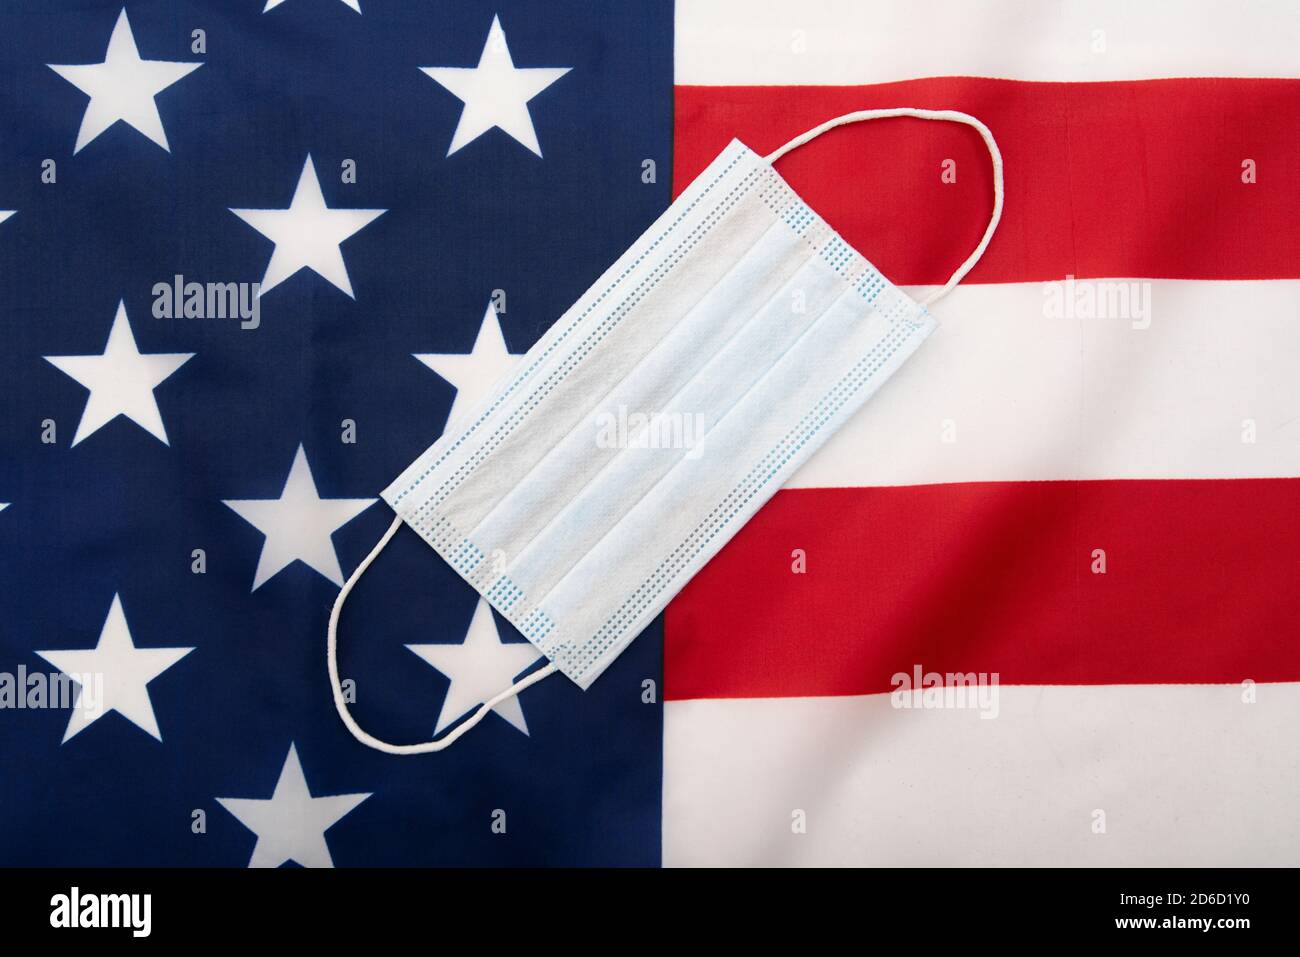 Masque chirurgical, masque médical sur le drapeau des Etats-Unis, image concept Banque D'Images